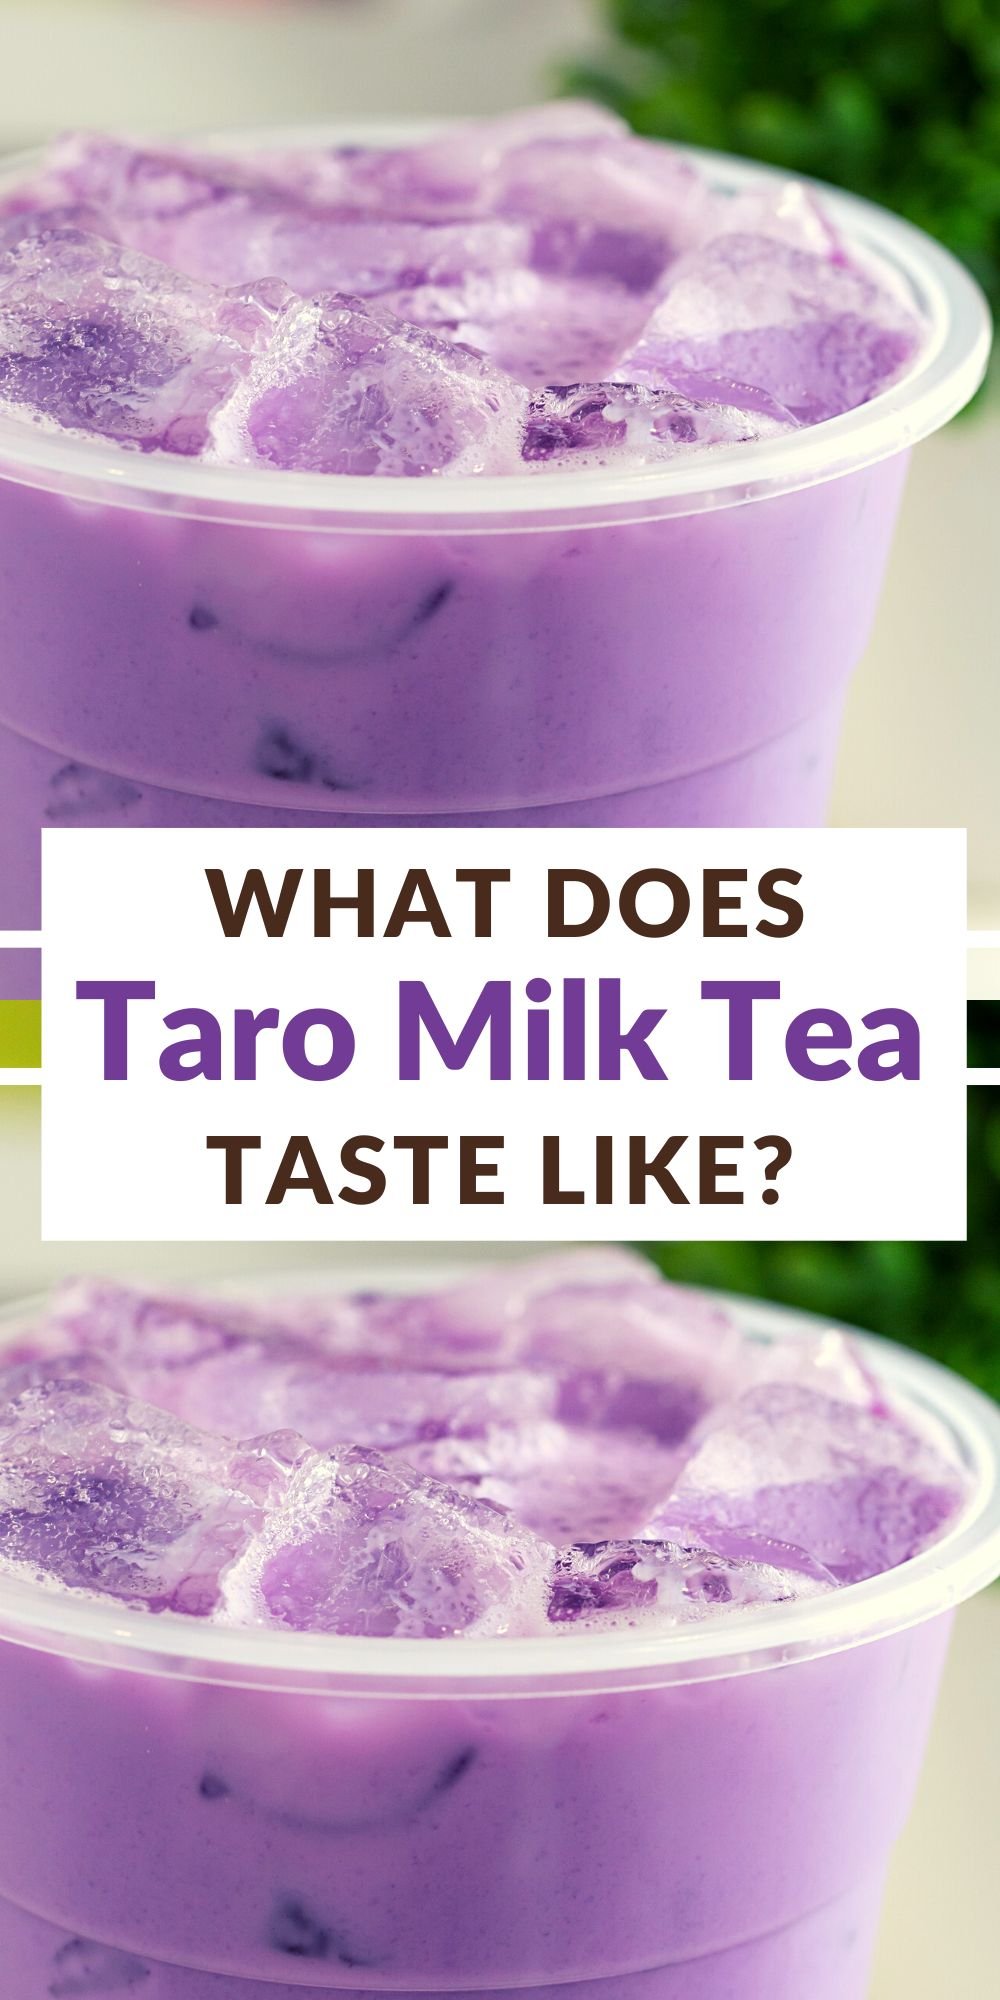 What Does Taro Milk Tea Taste Like